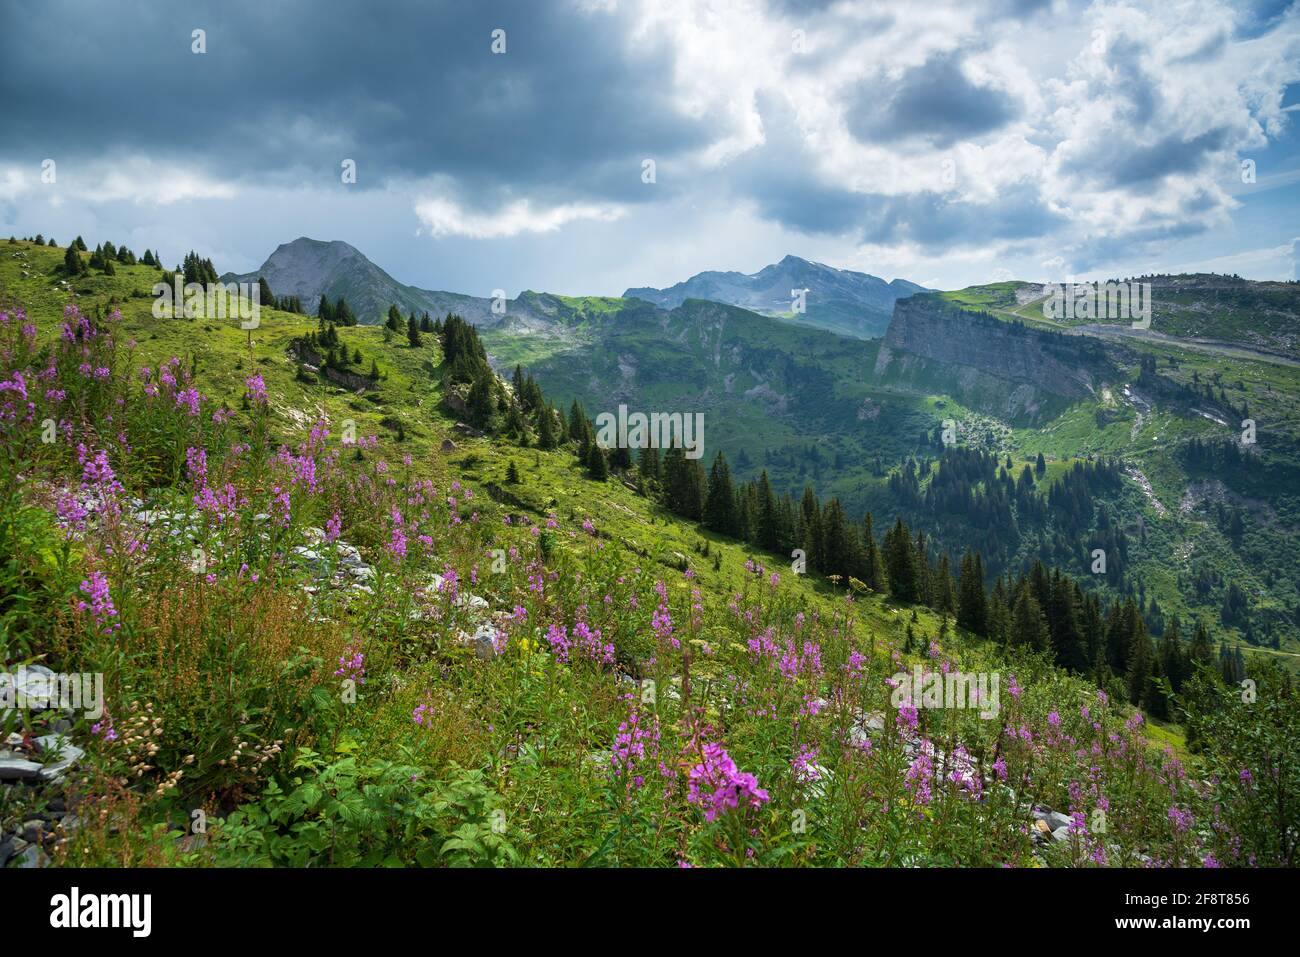 Wunderschöne alpine Sommerlandschaft mit wilden Blumen im Vordergrund. Dramatische Wolkenlandschaft. Französische Alpen, Region Morzine, Haute-Savoie, Frankreich. Szen Stockfoto